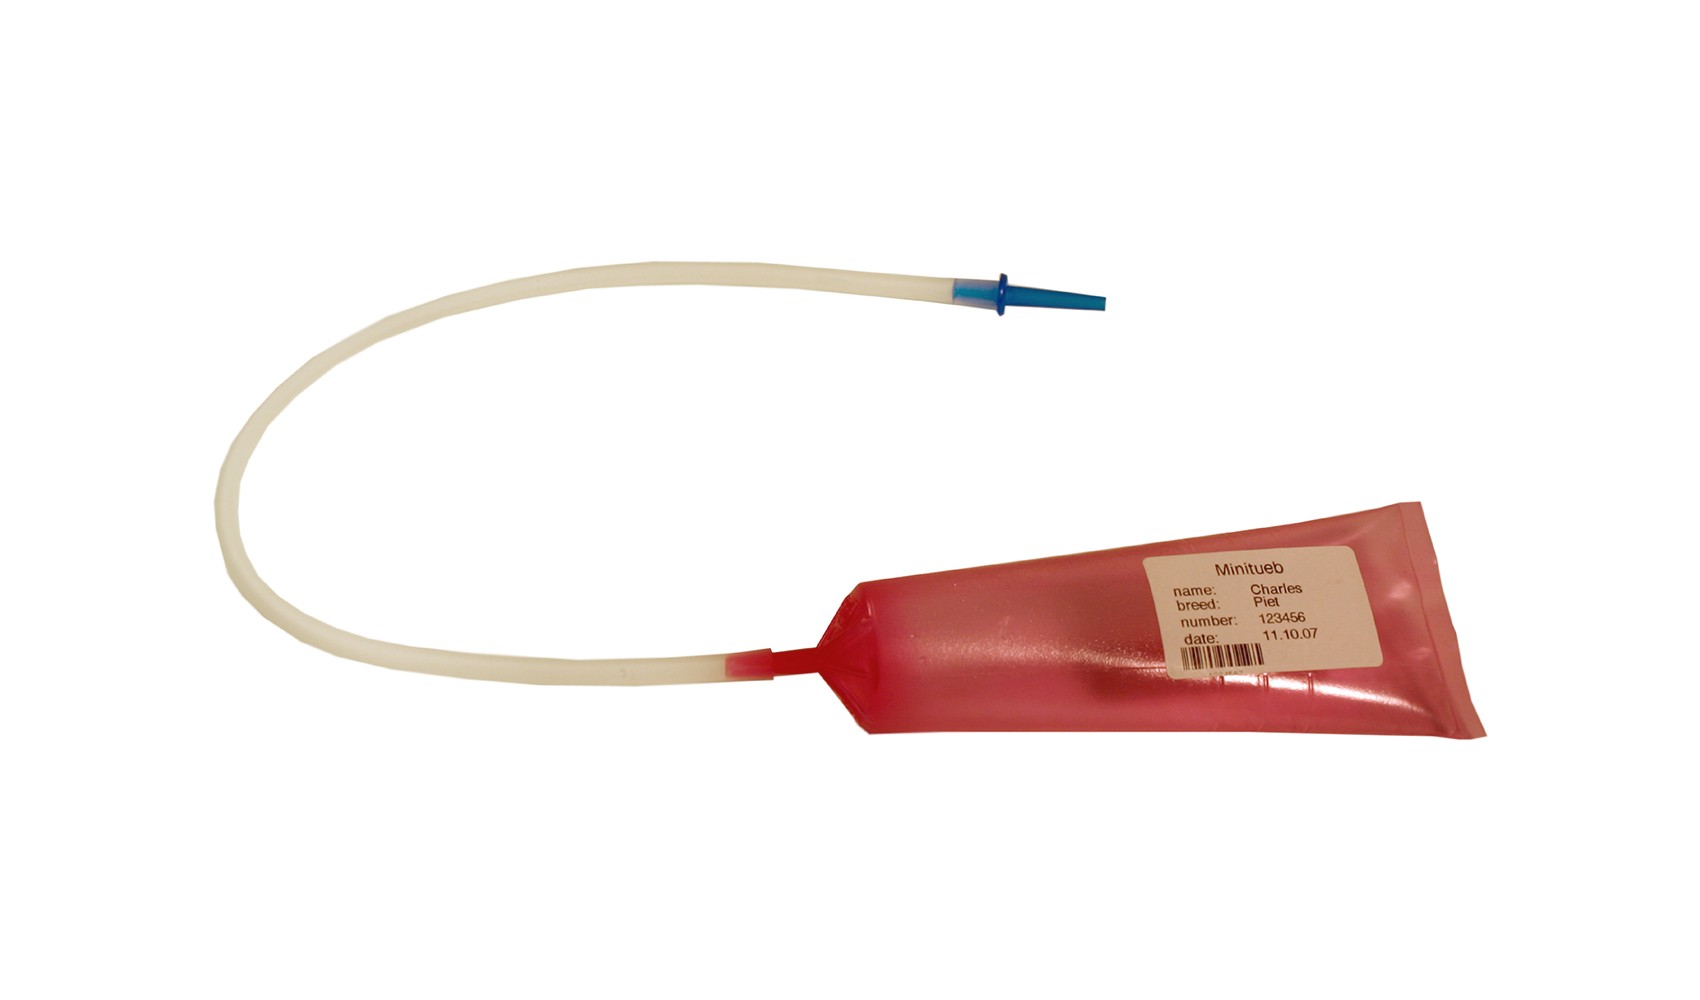 Extension for catheter, flexible, 1/bag